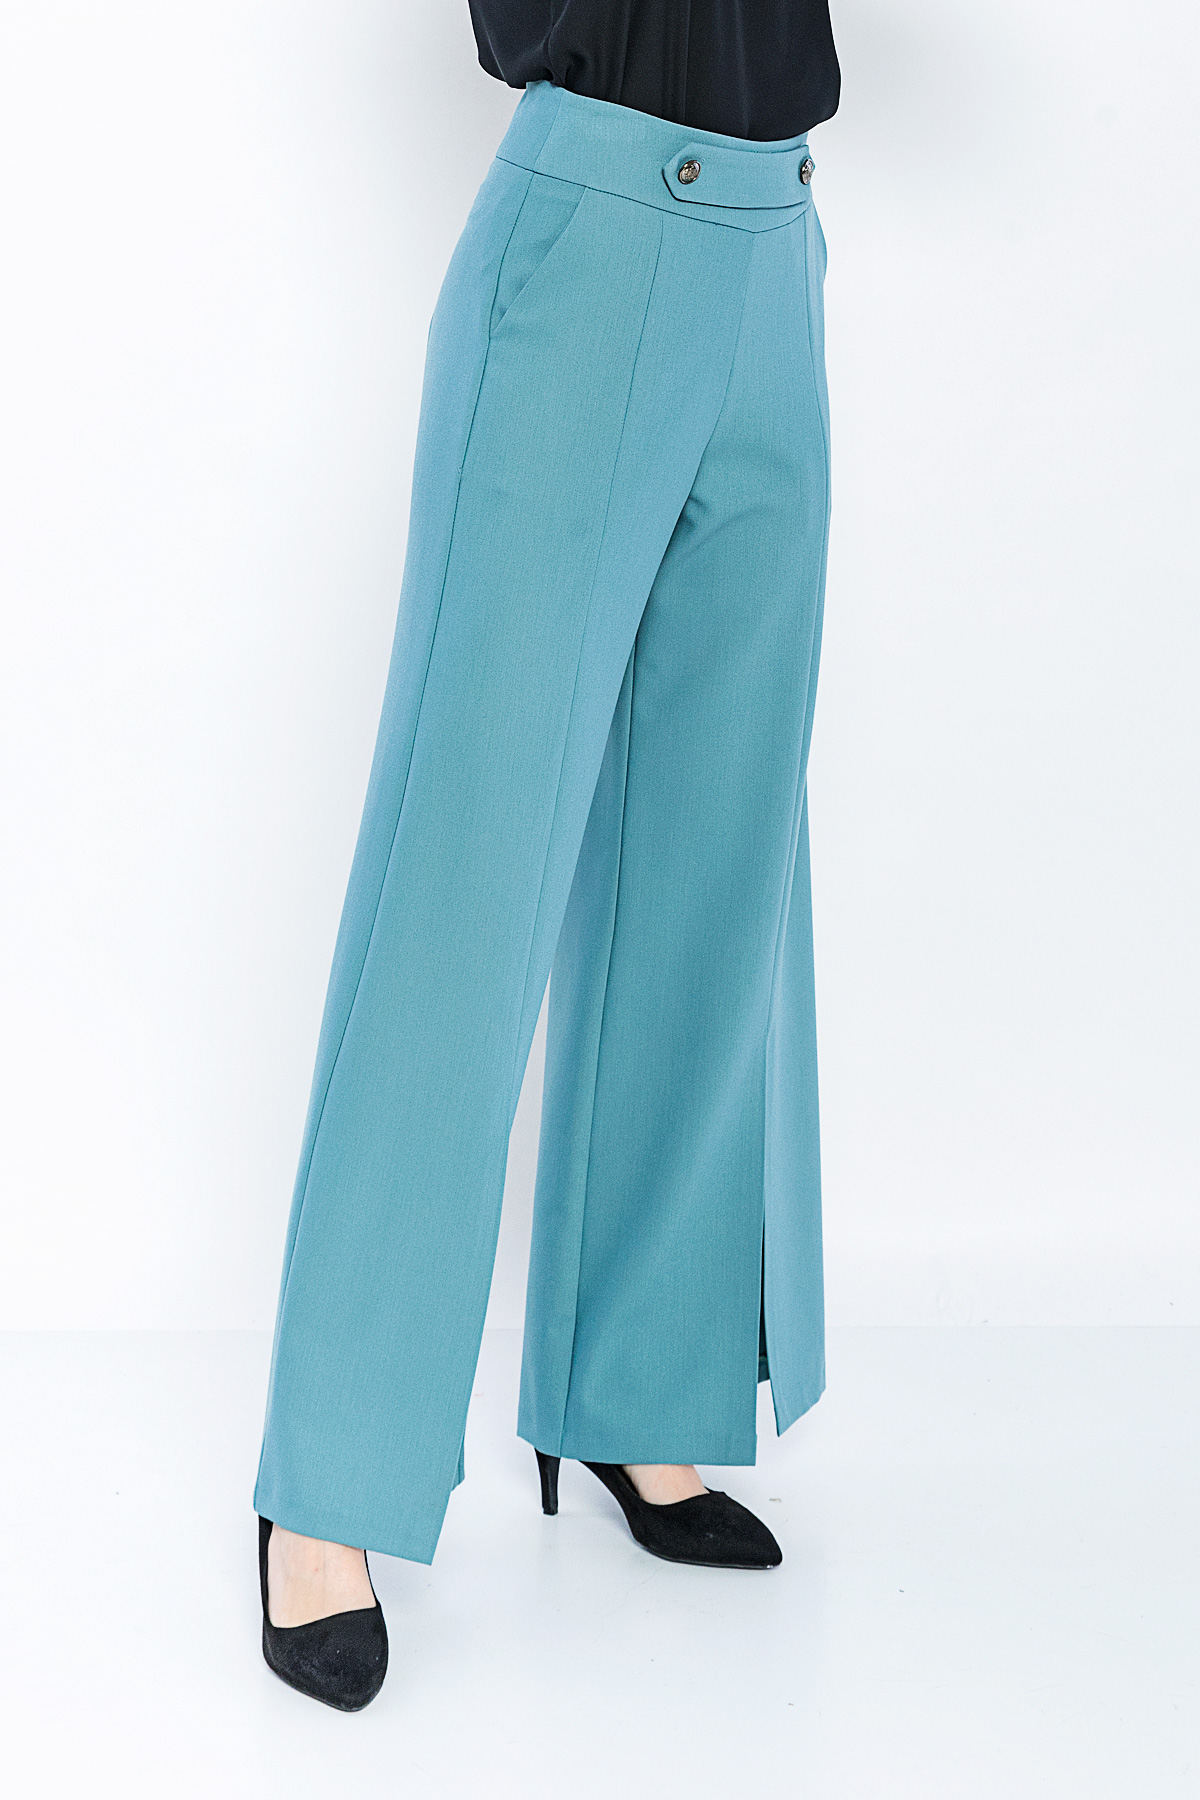 Kadın Mavi Bol Kesim Yırtmaçlı Paça Pantolon resmi